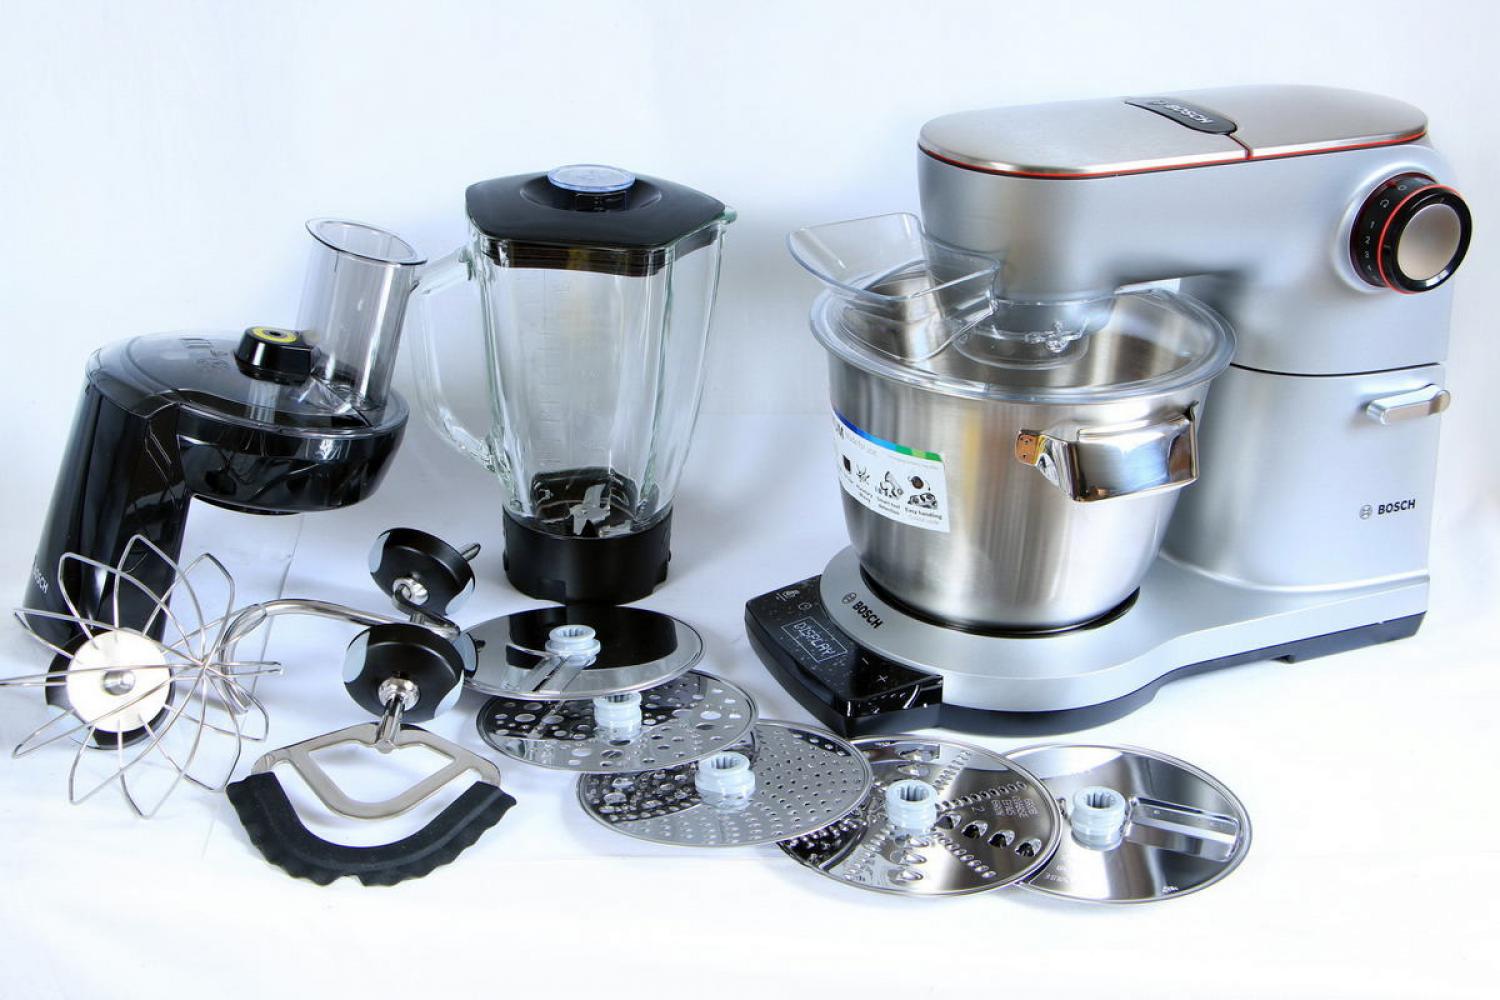 Bosch OptiMUM 9 Küchenmaschine 1500W 5,5l + Zubehör Silber MUM9DT5S41 B-Ware 19